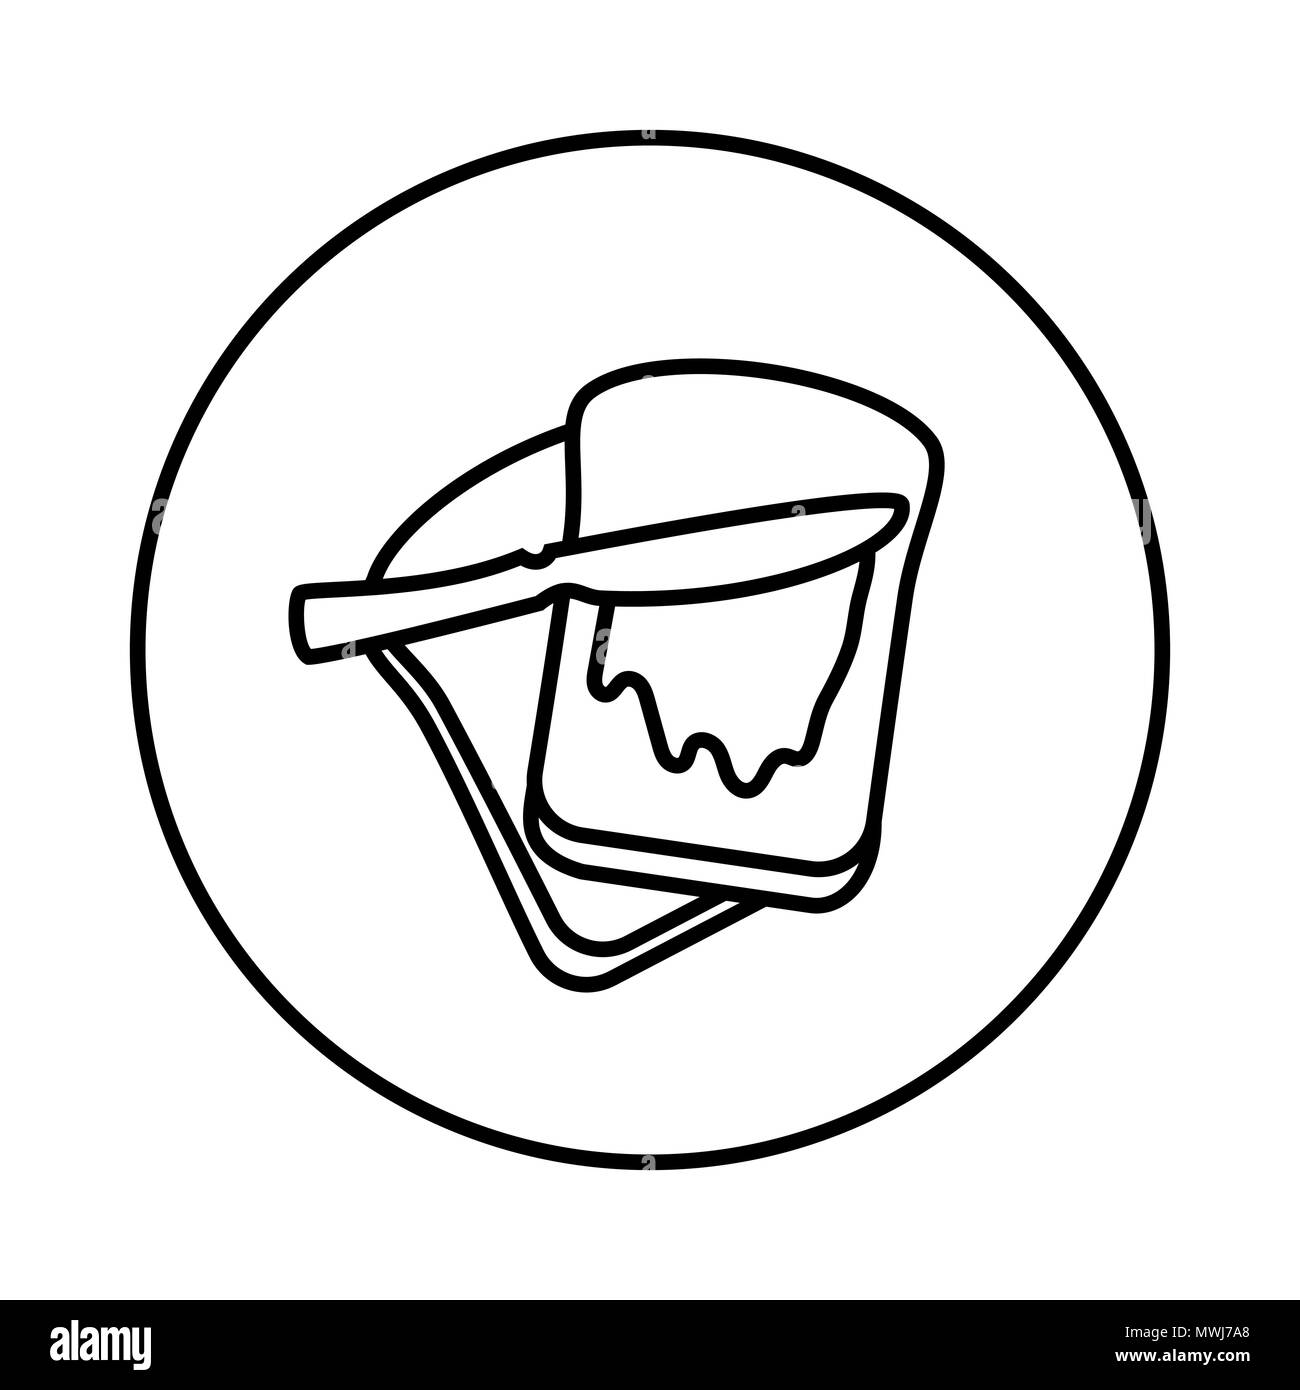 Vecteur de pain avec beurre à l'icône de la ligne du cercle, symbole iconique dans un cercle, sur fond blanc. Vector design iconique. Illustration de Vecteur